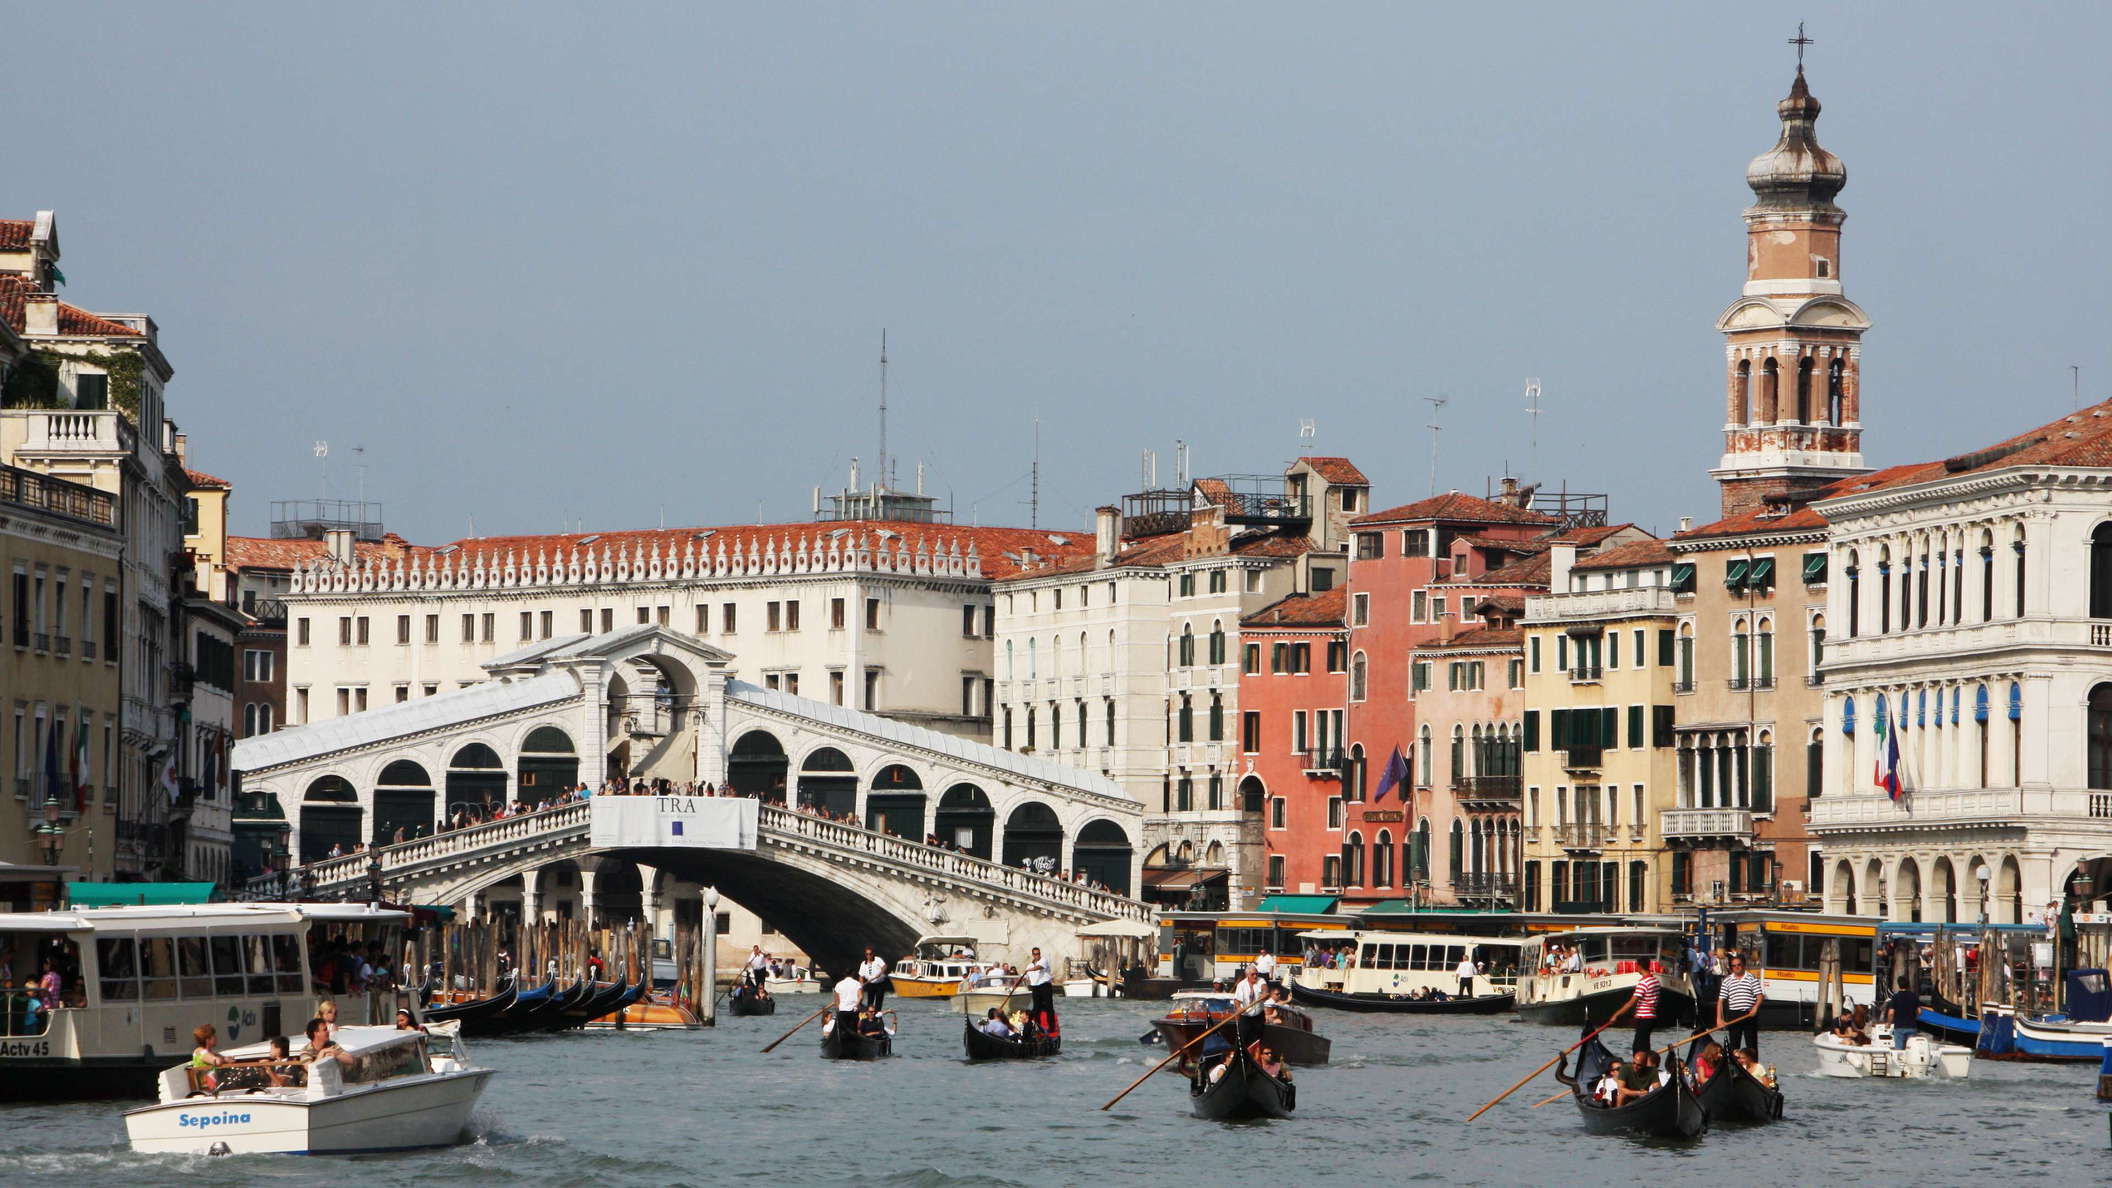 Venezia | Canal Grande with Ponte di Rialto